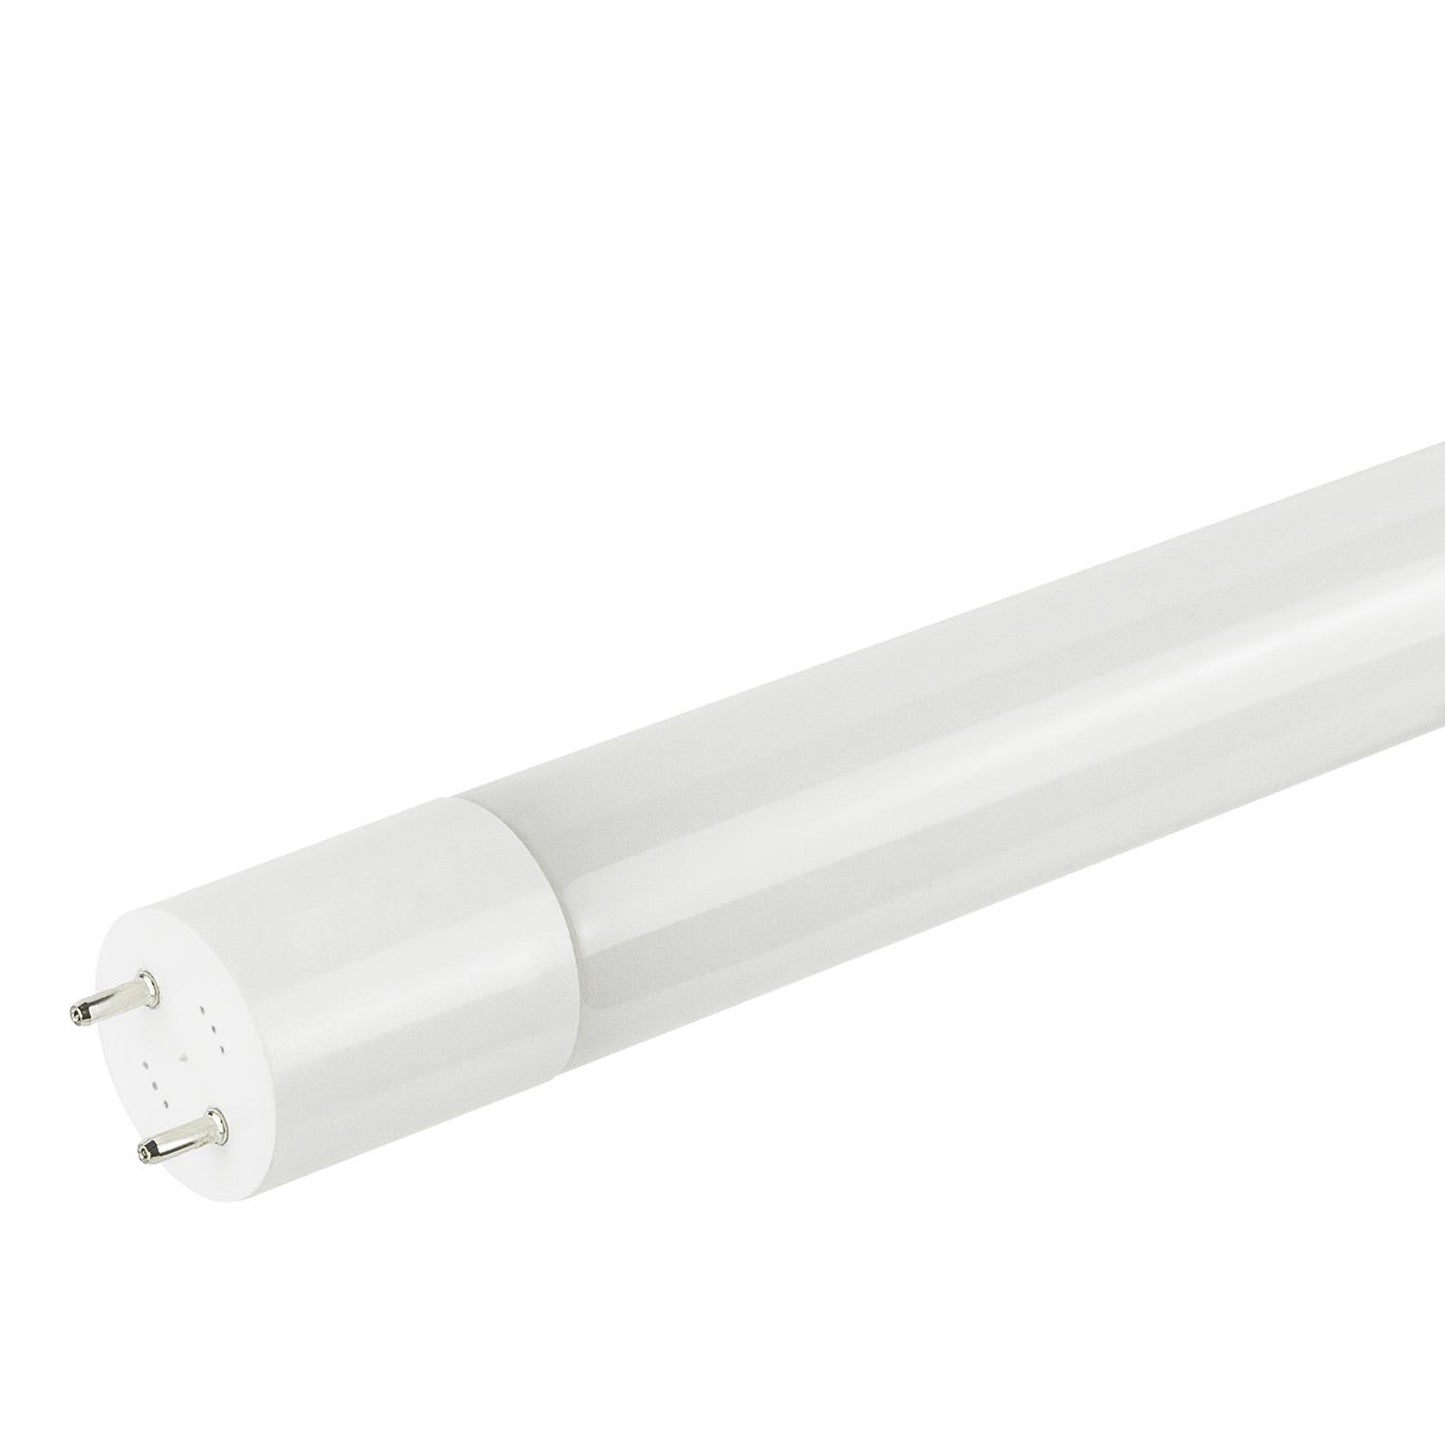 Sunlite T8/LED/4'/15W/IS/DLC/40K LED 15W 4 Foot Instant Start T8 Tube Light Fixtures, 4000K Cool White Light, G13 Base